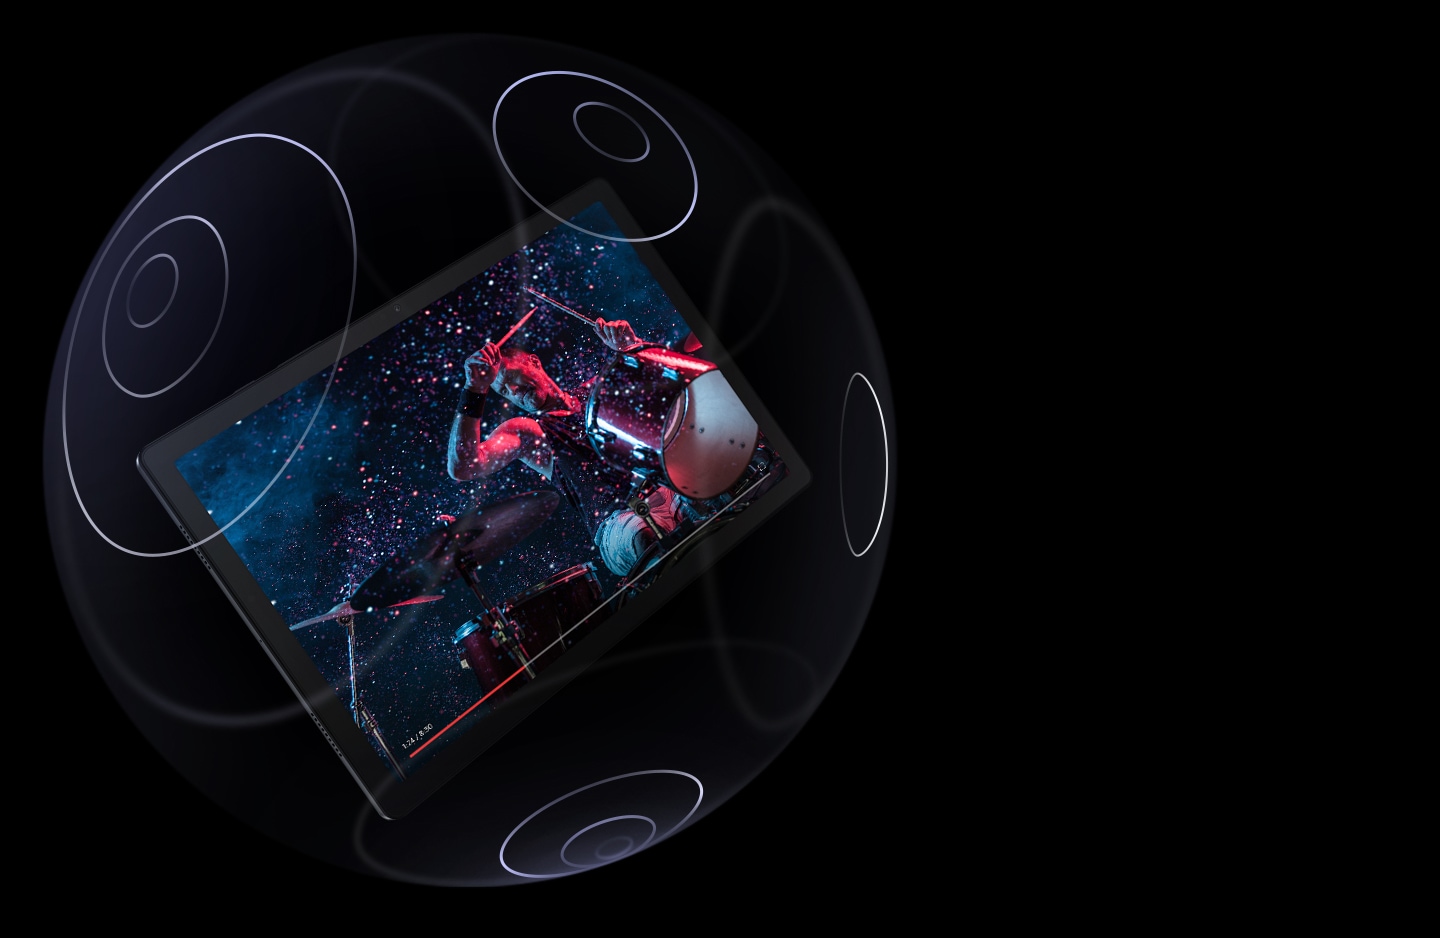 Galaxy Tab A8 được hiển thị nổi bên trong một quả cầu trong suốt có các vòng tròn đồng tâm được đánh dấu trên bề mặt. Màn hình hiển thị một người đàn ông đang chơi trống, với thanh tiến trình ở phía dưới.